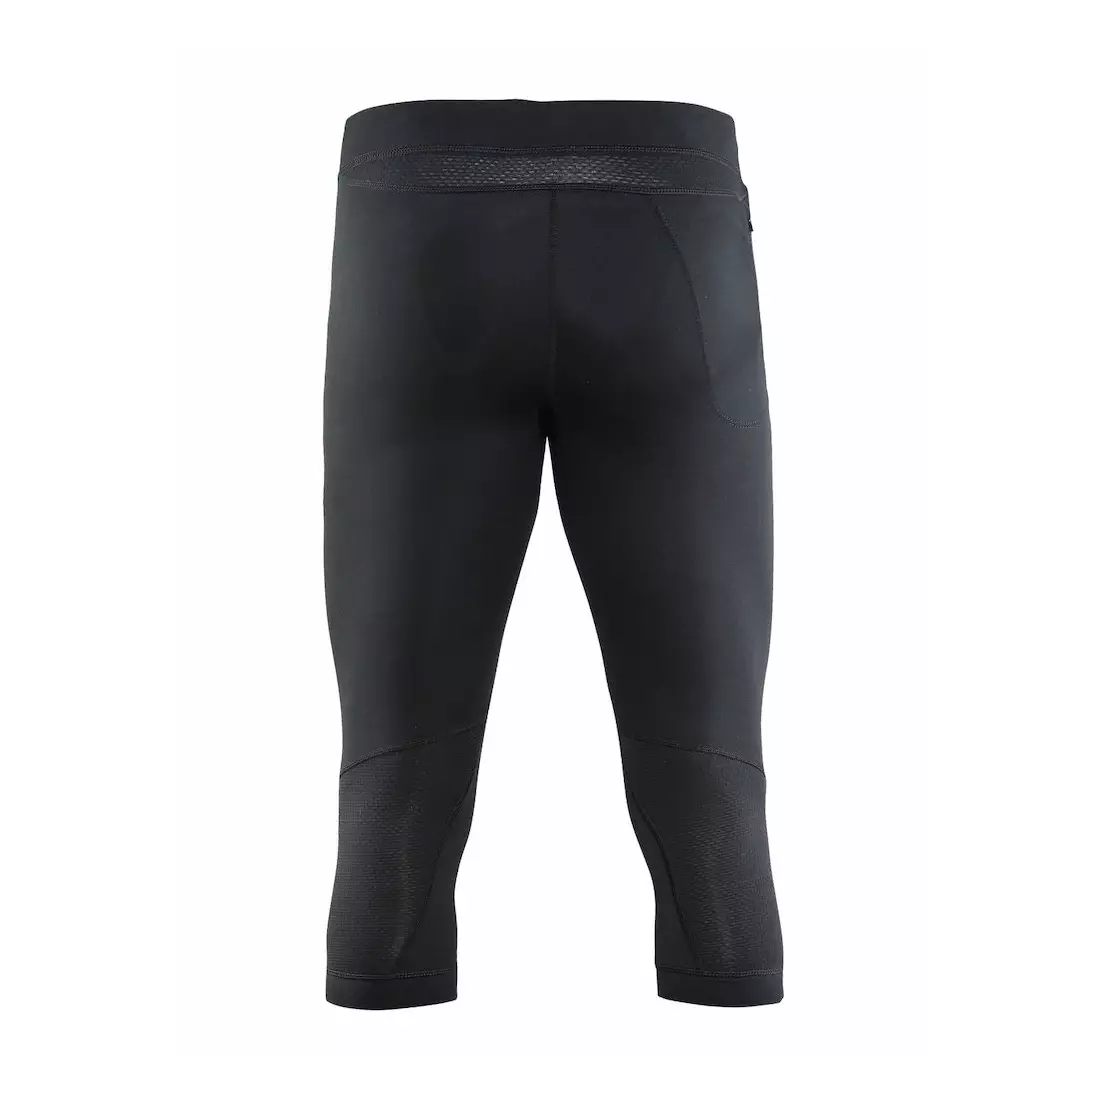 CRAFT Essential Run 1904792-9999 - pantaloni scurți de alergare 3/4 pentru bărbați